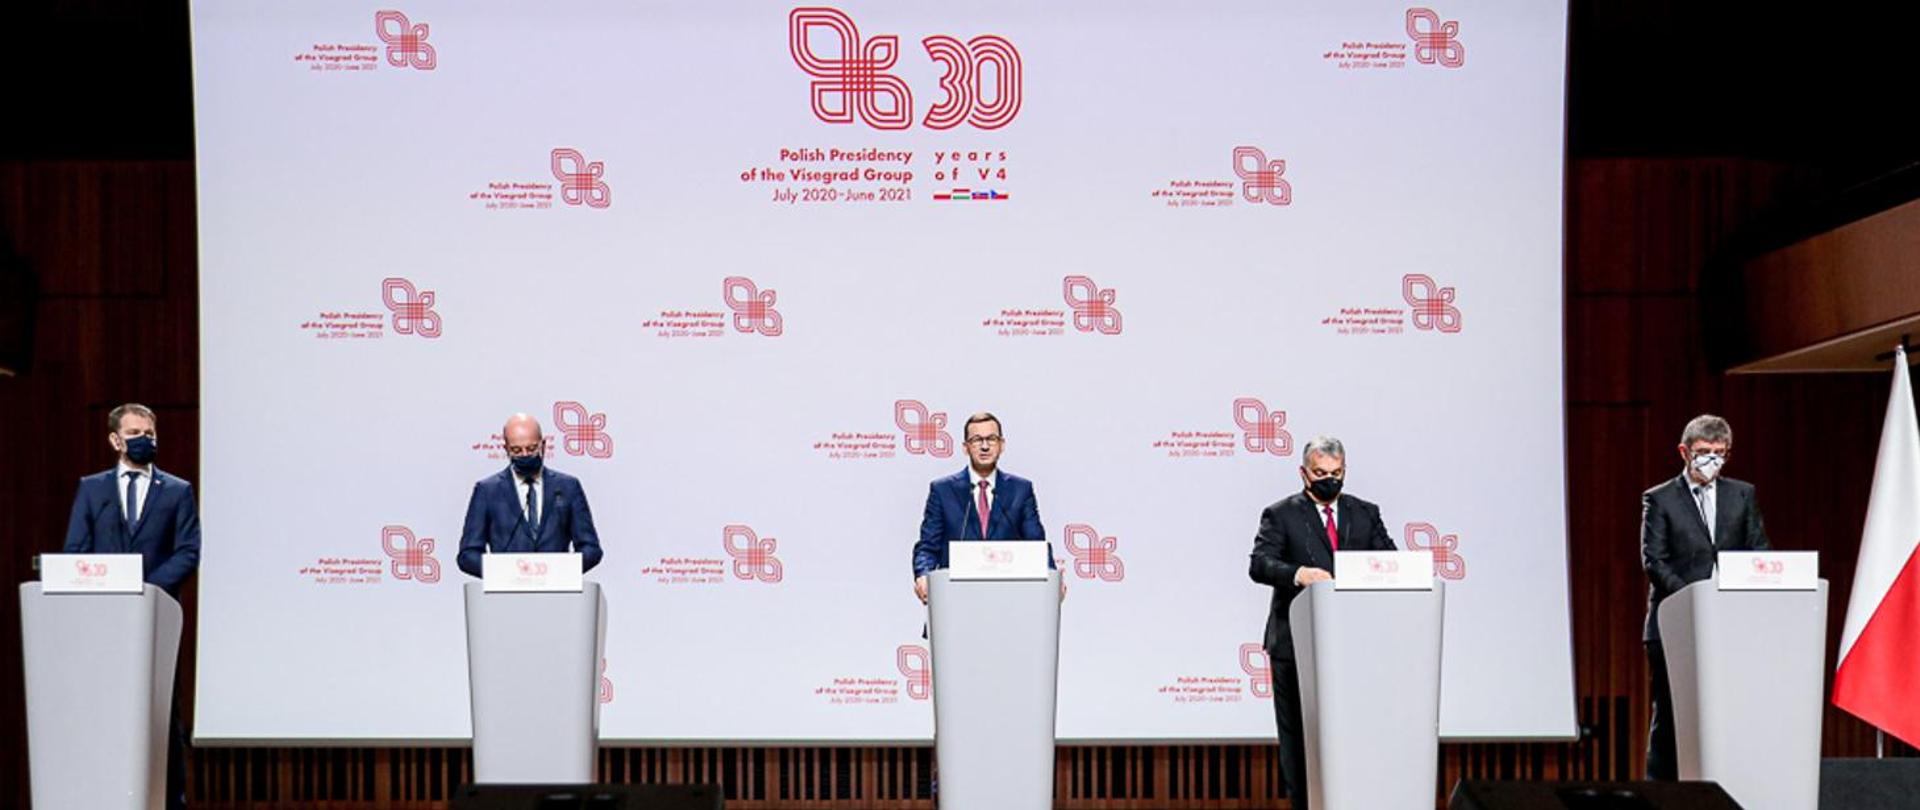 Premierzy Polski, Czech, Węgier, Słowacji oraz szef Rady Europejskiej w trakcie konferencji - stoją przy mównicach.